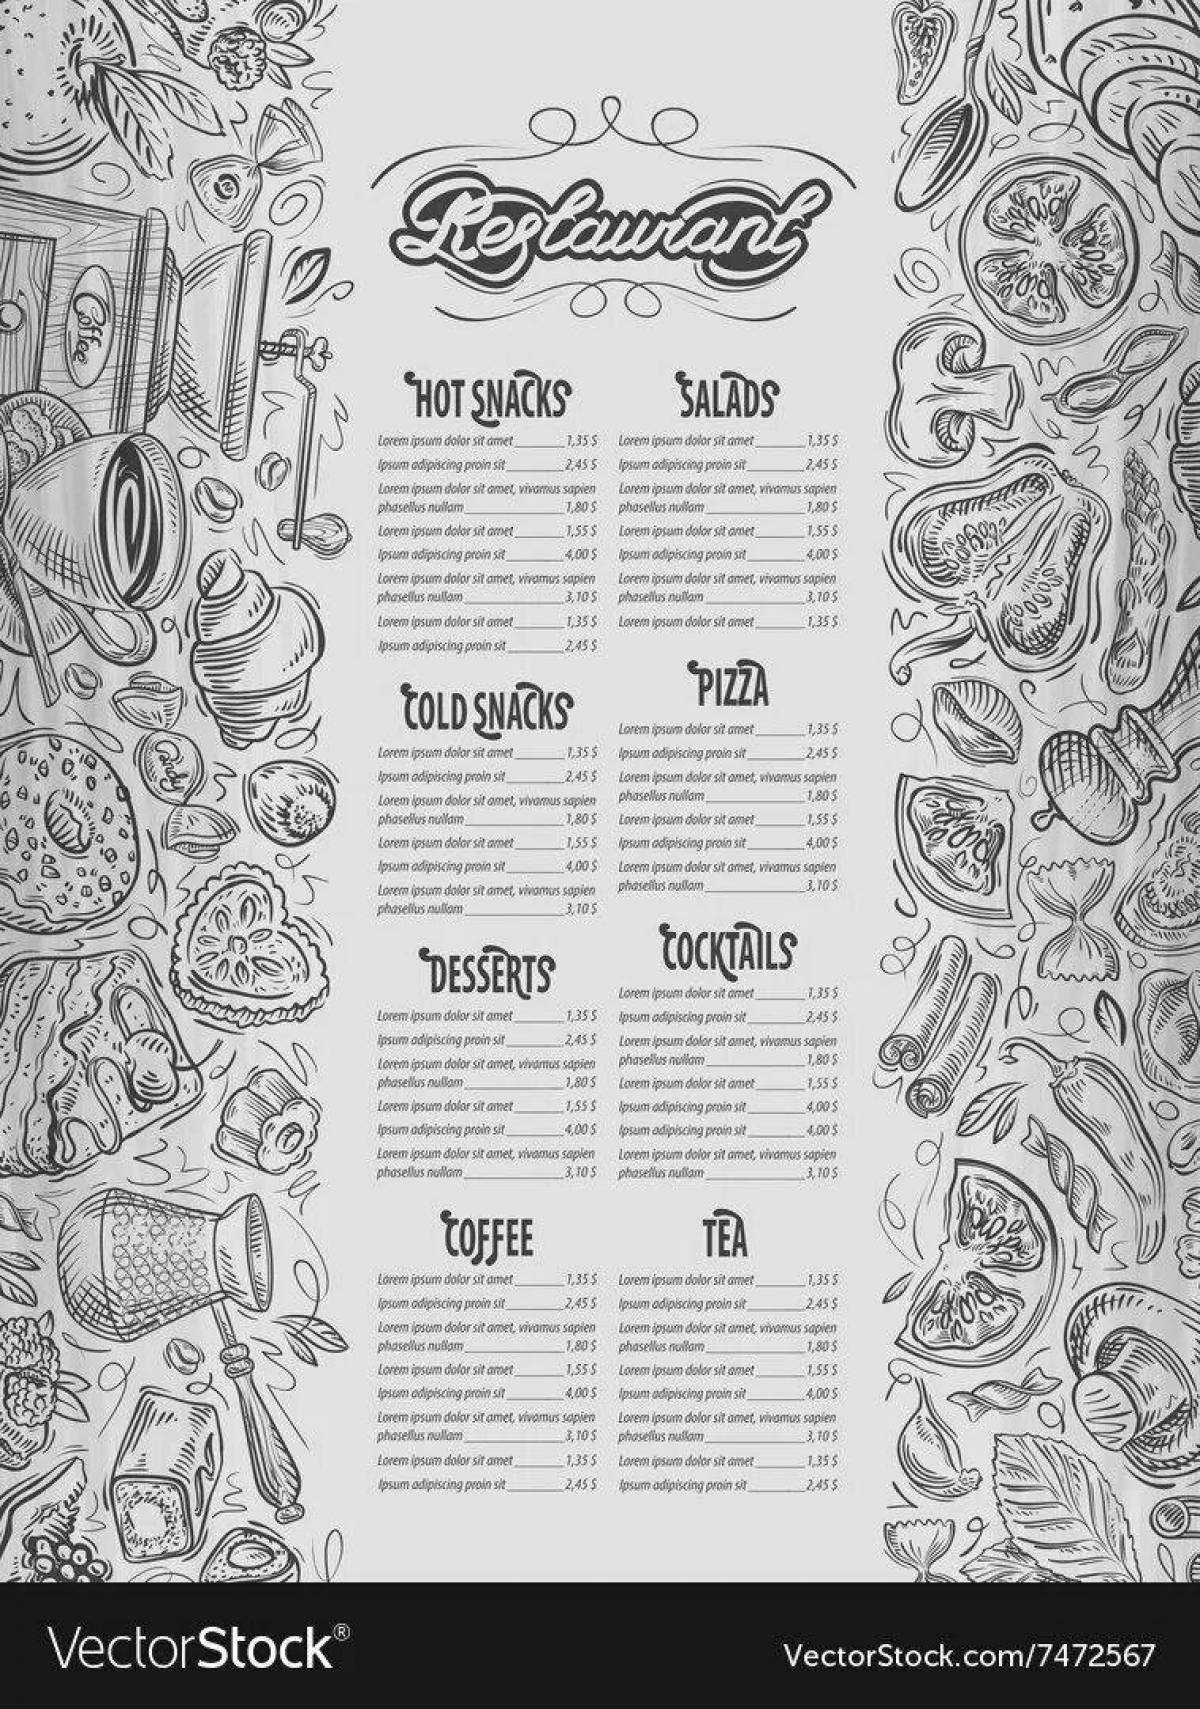 Humorous restaurant menu coloring page